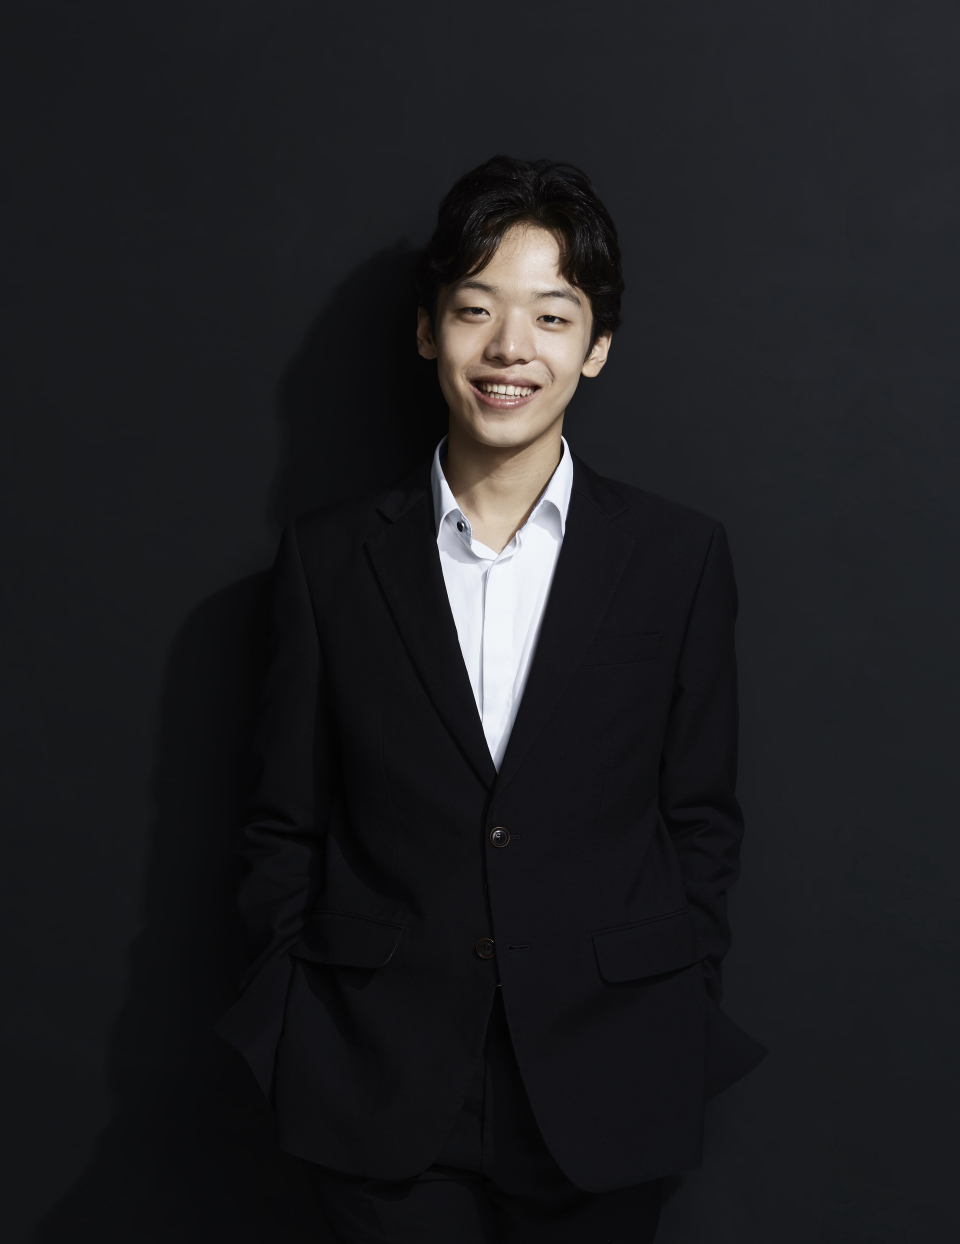 피아니스트 이혁 (c)Taeuk Kang